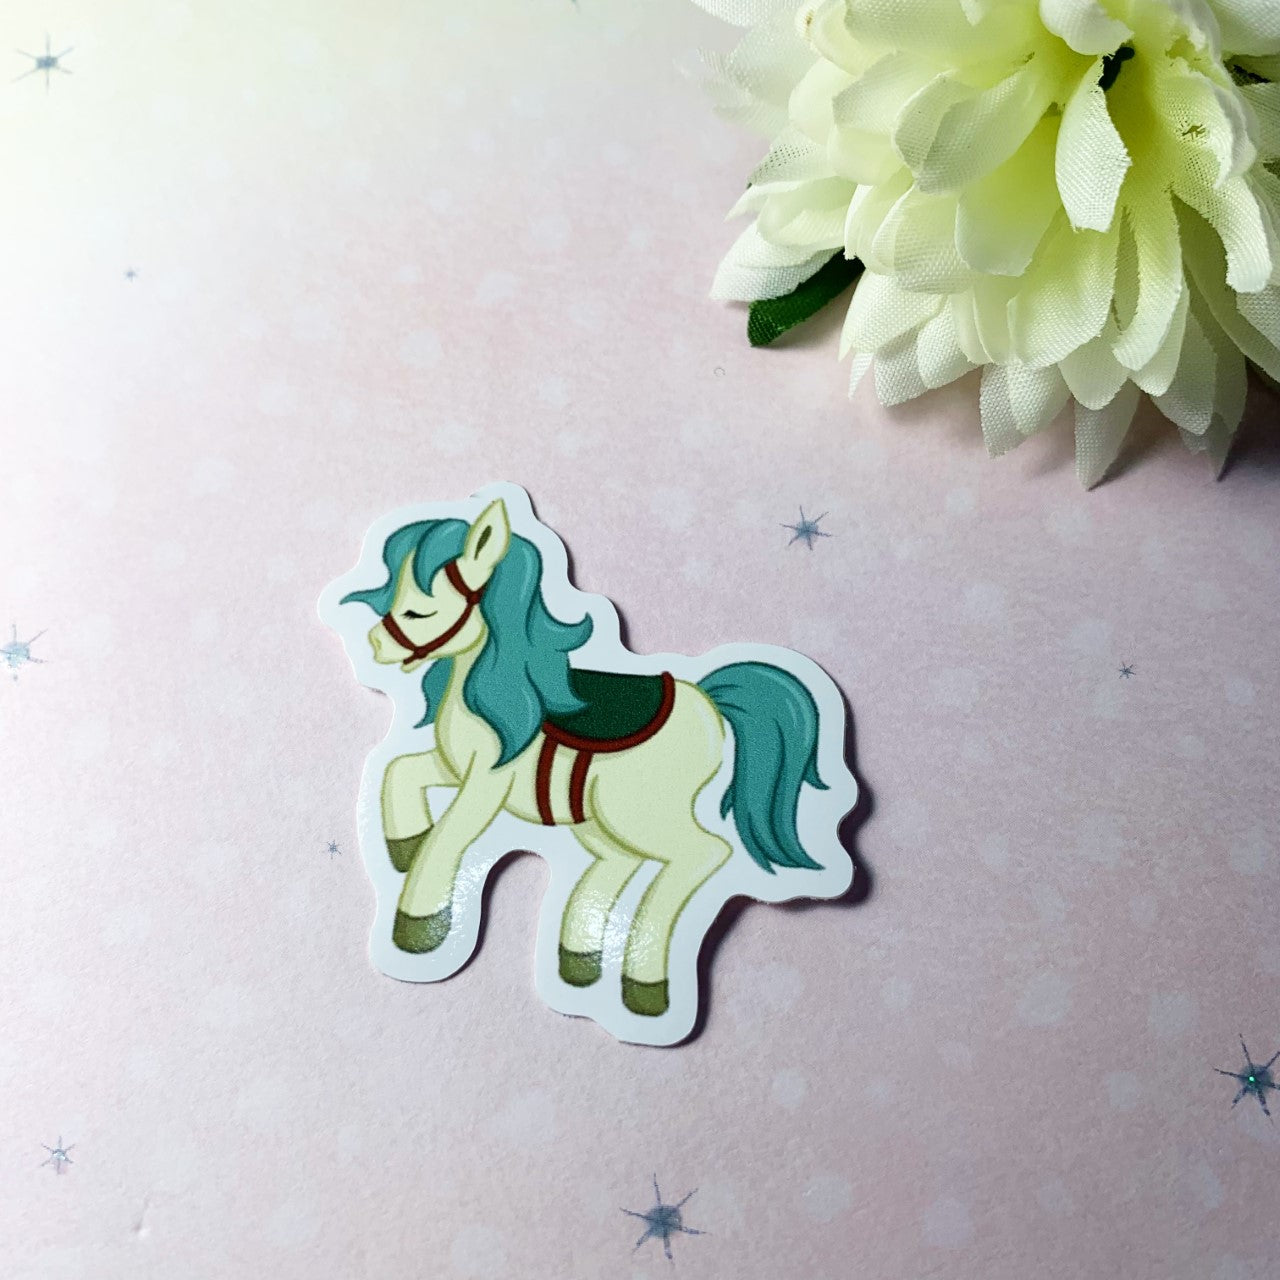 Carousel horse vinyl sticker